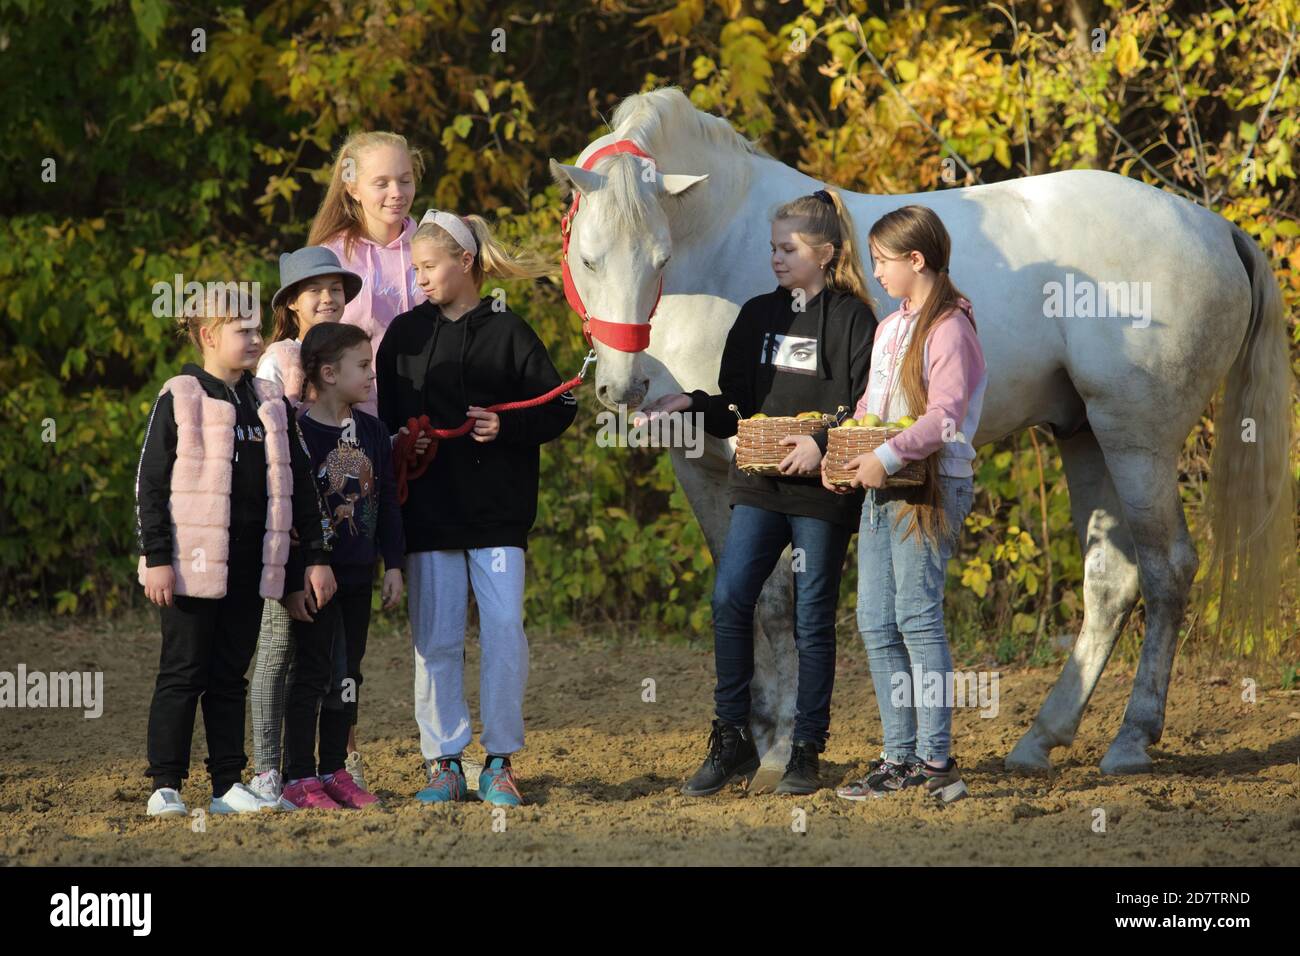 Enfants jouant au cheval de frégon dans la ferme. Les petites filles s'amusent tout en marchant à l'extérieur Banque D'Images